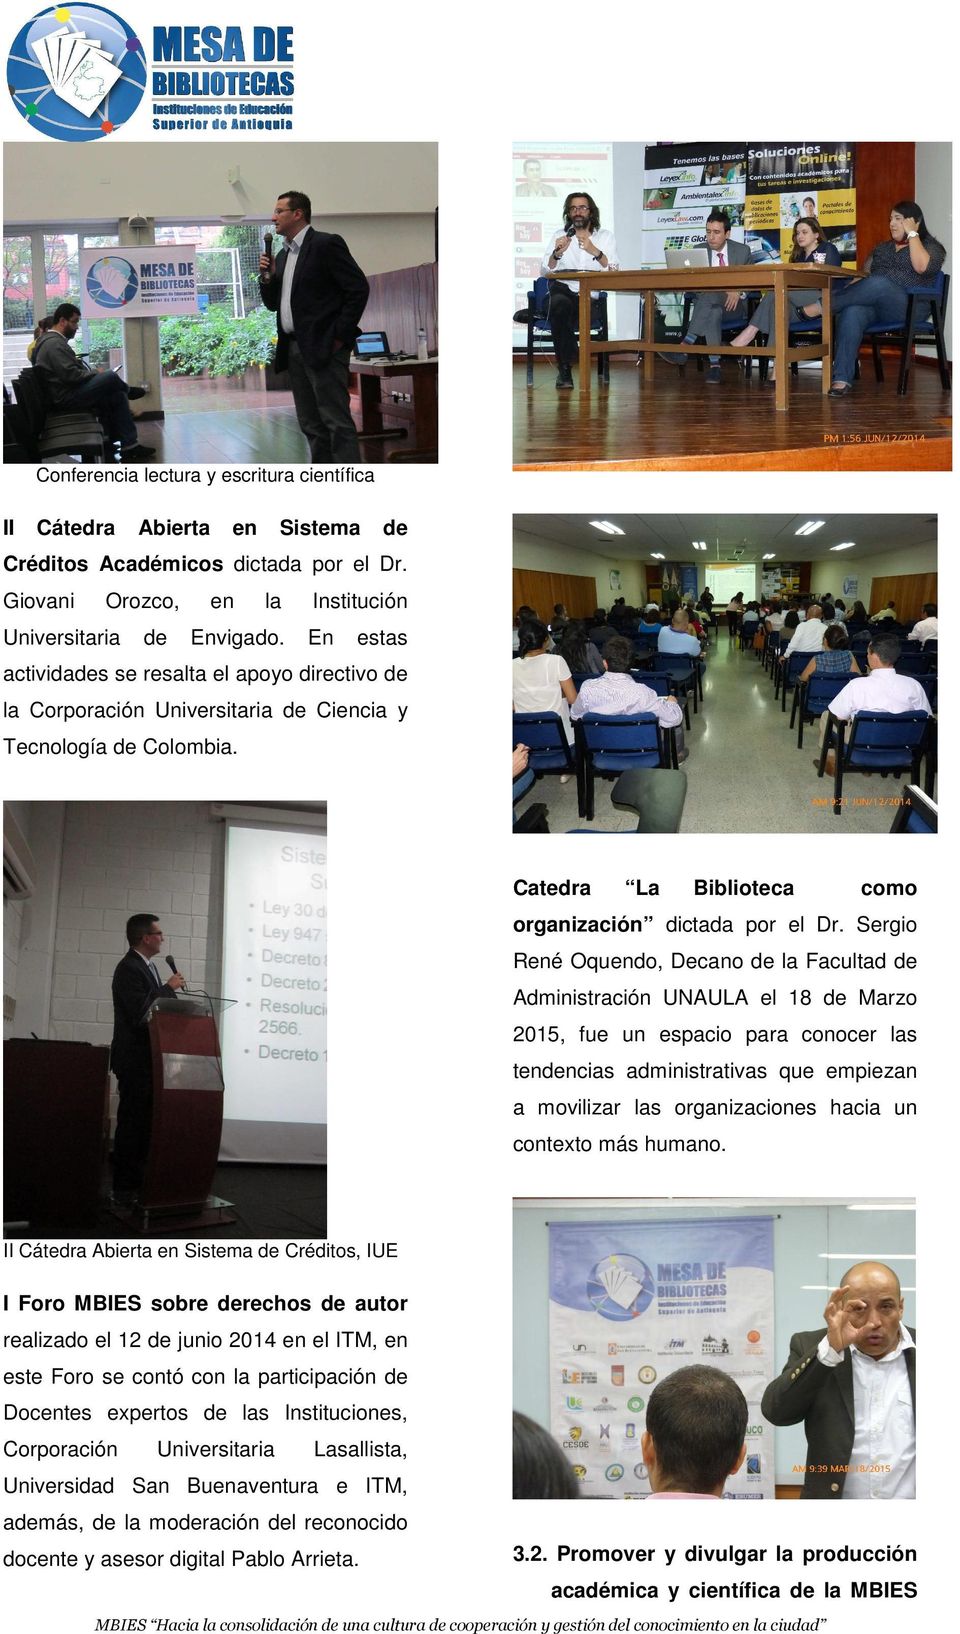 Sergio René Oquendo, Decano de la Facultad de Administración UNAULA el 18 de Marzo 2015, fue un espacio para conocer las tendencias administrativas que empiezan a movilizar las organizaciones hacia